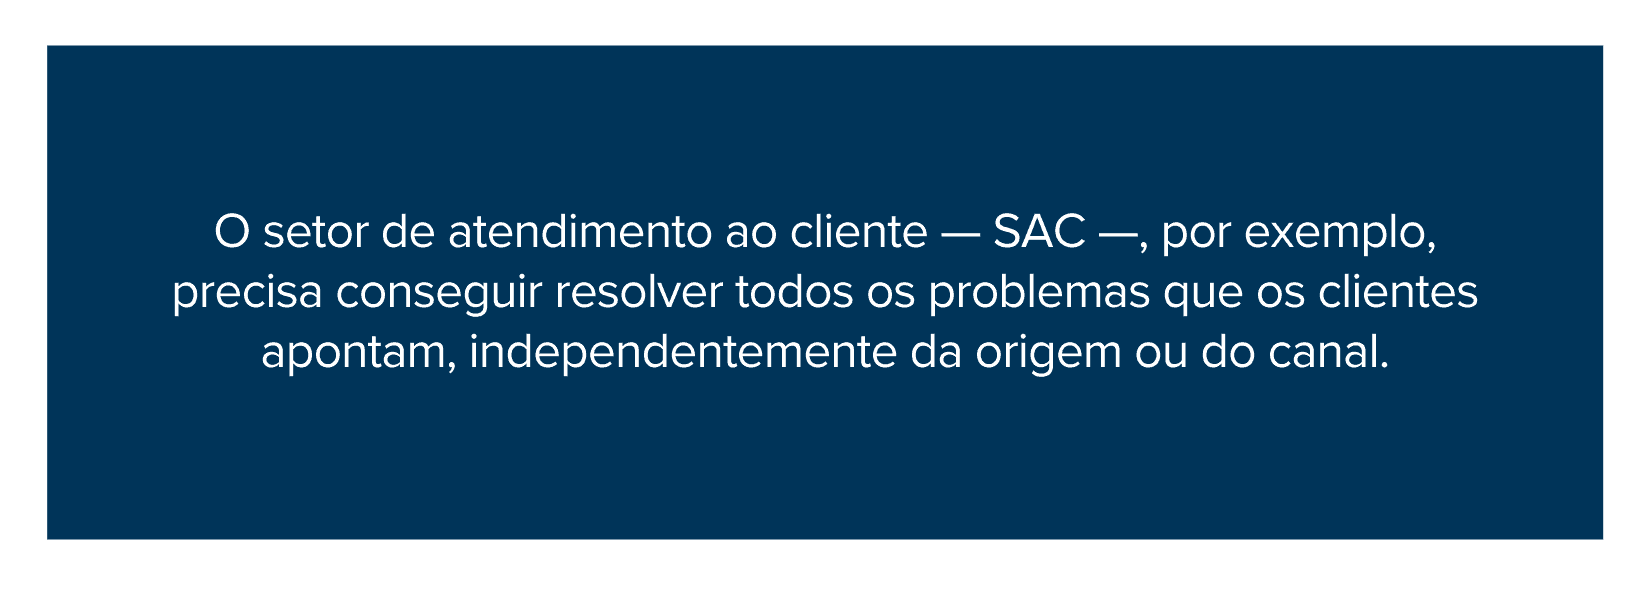 O setor de atendimento ao cliente — SAC —, por exemplo, precisa conseguir resolver todos os problemas que os clientes apontam, independentemente da origem ou do canal.